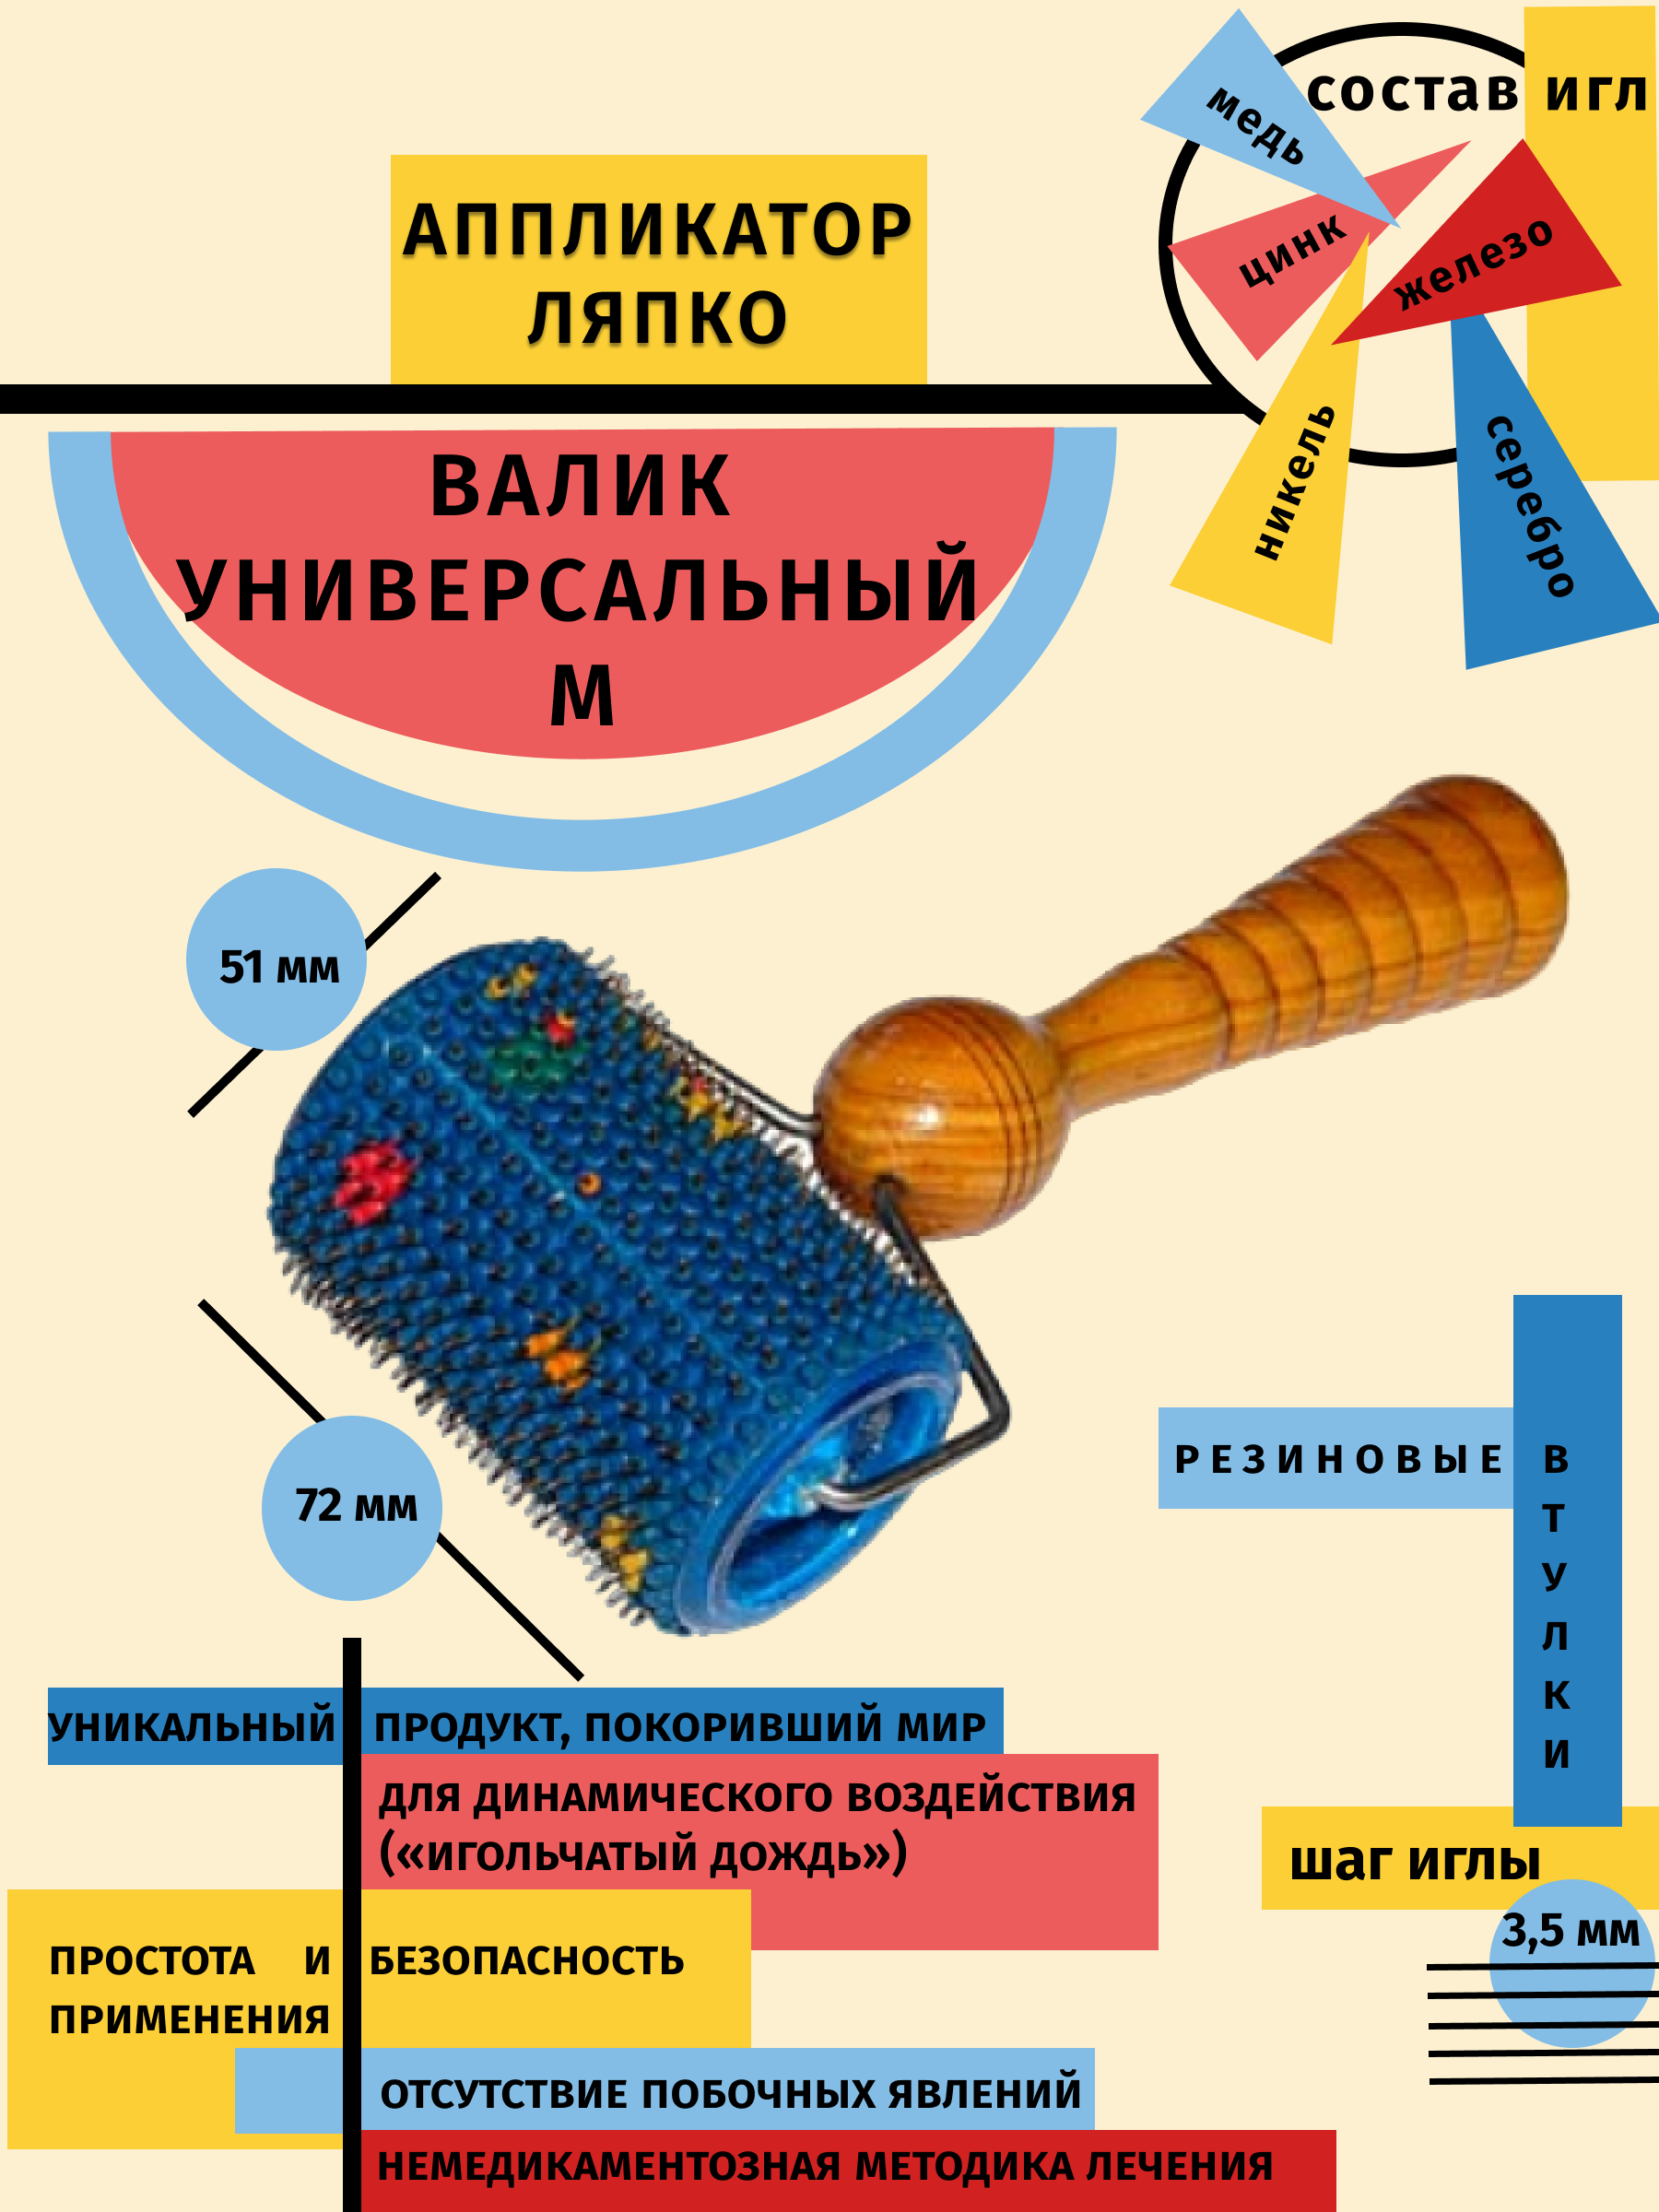 Аппликатор Ляпко Валик универсальный шаг игл 3,5 мм цвет: синий (диаметр-51 мм, ширина-72 мм)